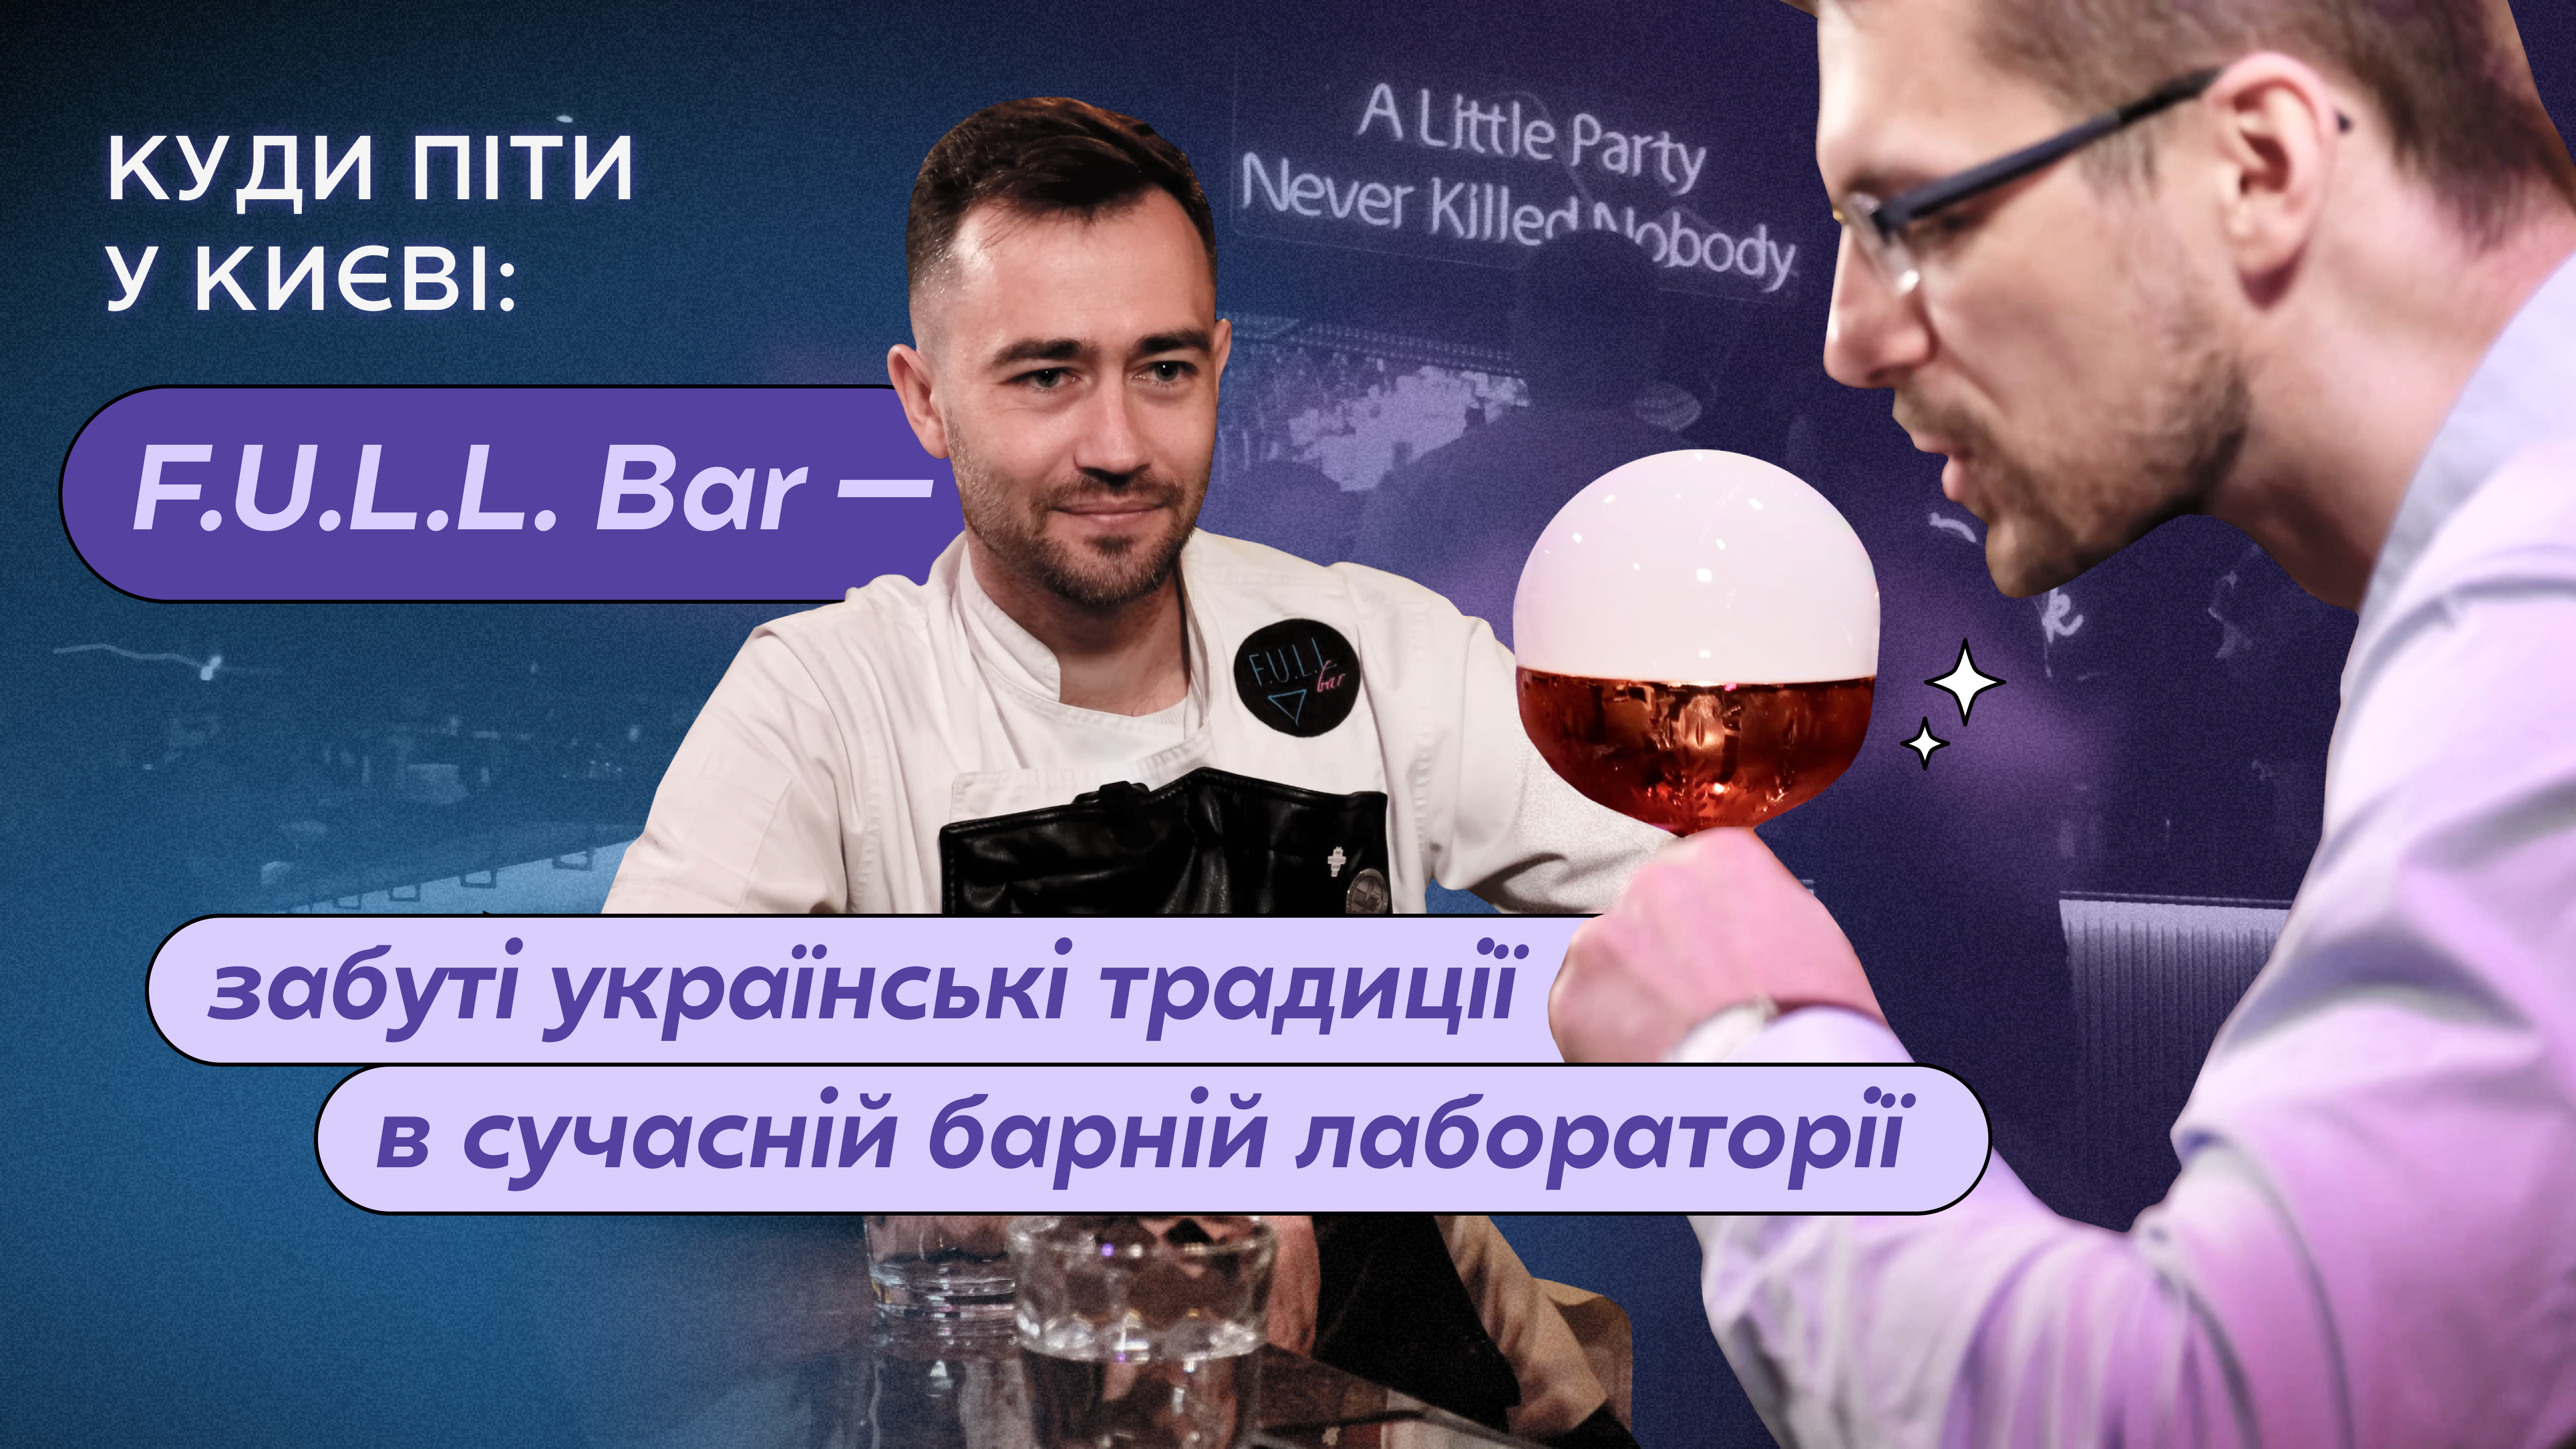 Куди піти у Києві: F.U.L.L. Bar із власною лабораторією